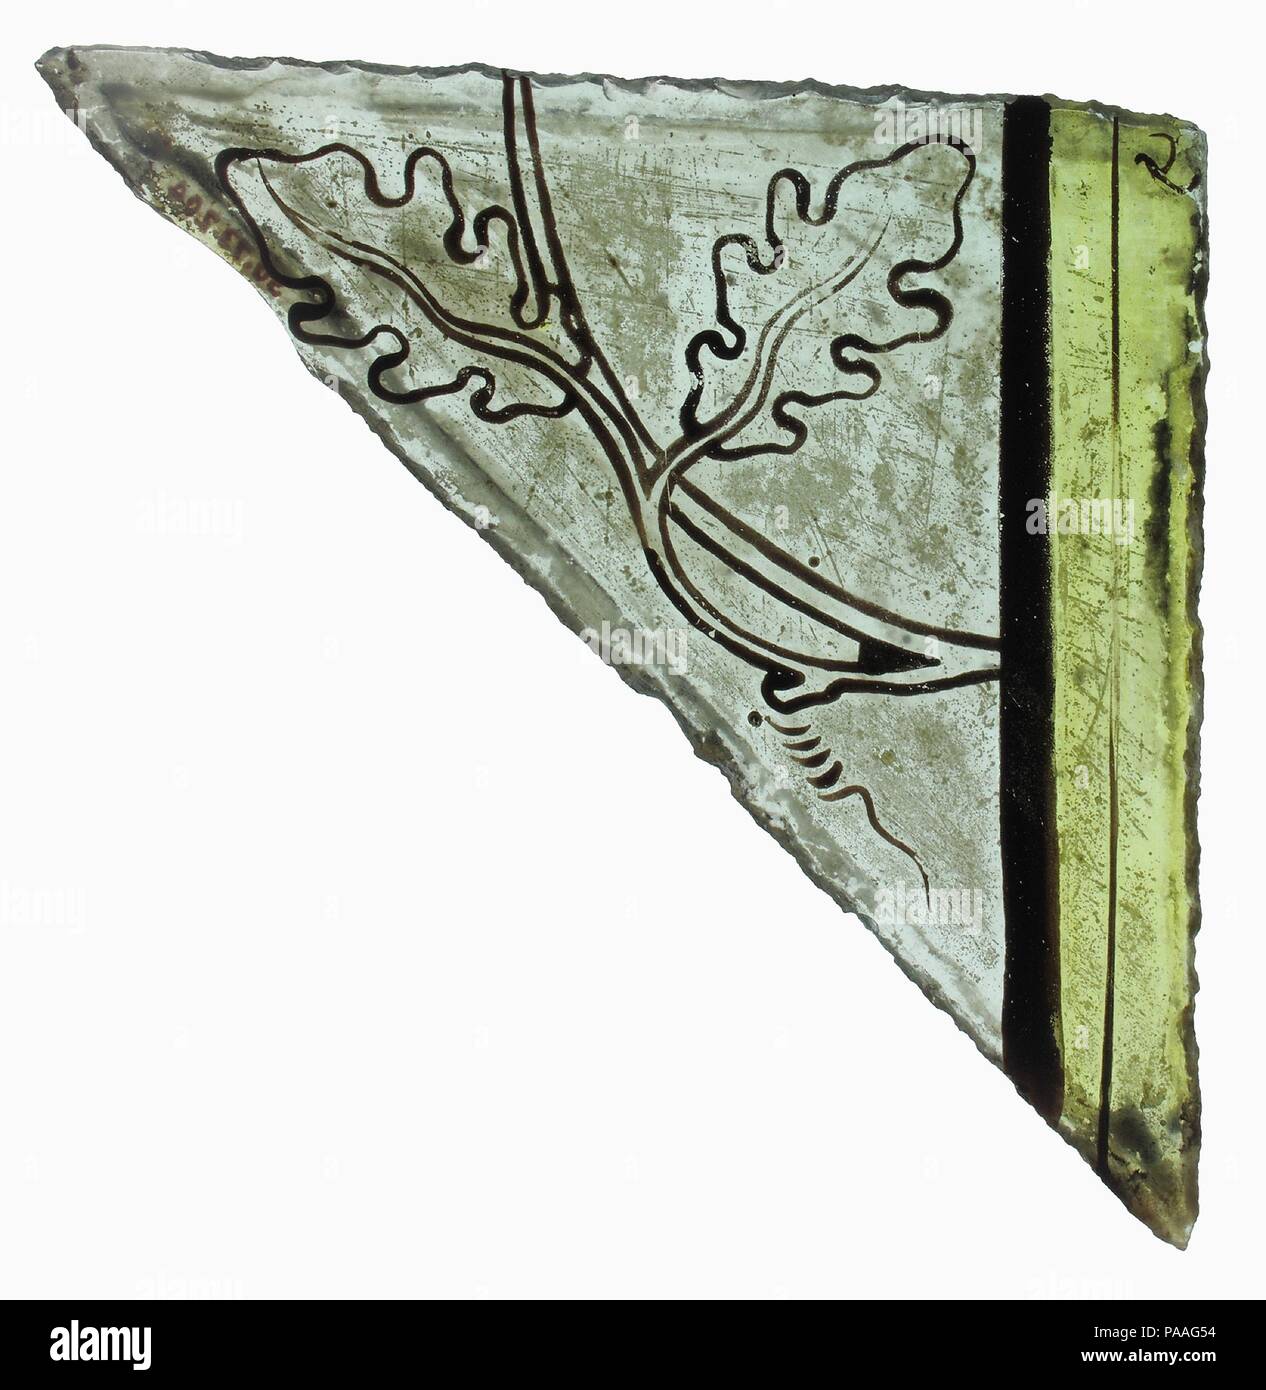 Fragment de verre. Culture : British. Dimensions : hors tout : 1 1/2 x 5 3/8 pouces (3,8 x 13,7 cm). Date : ca.1350. Musée : Metropolitan Museum of Art, New York, USA. Banque D'Images